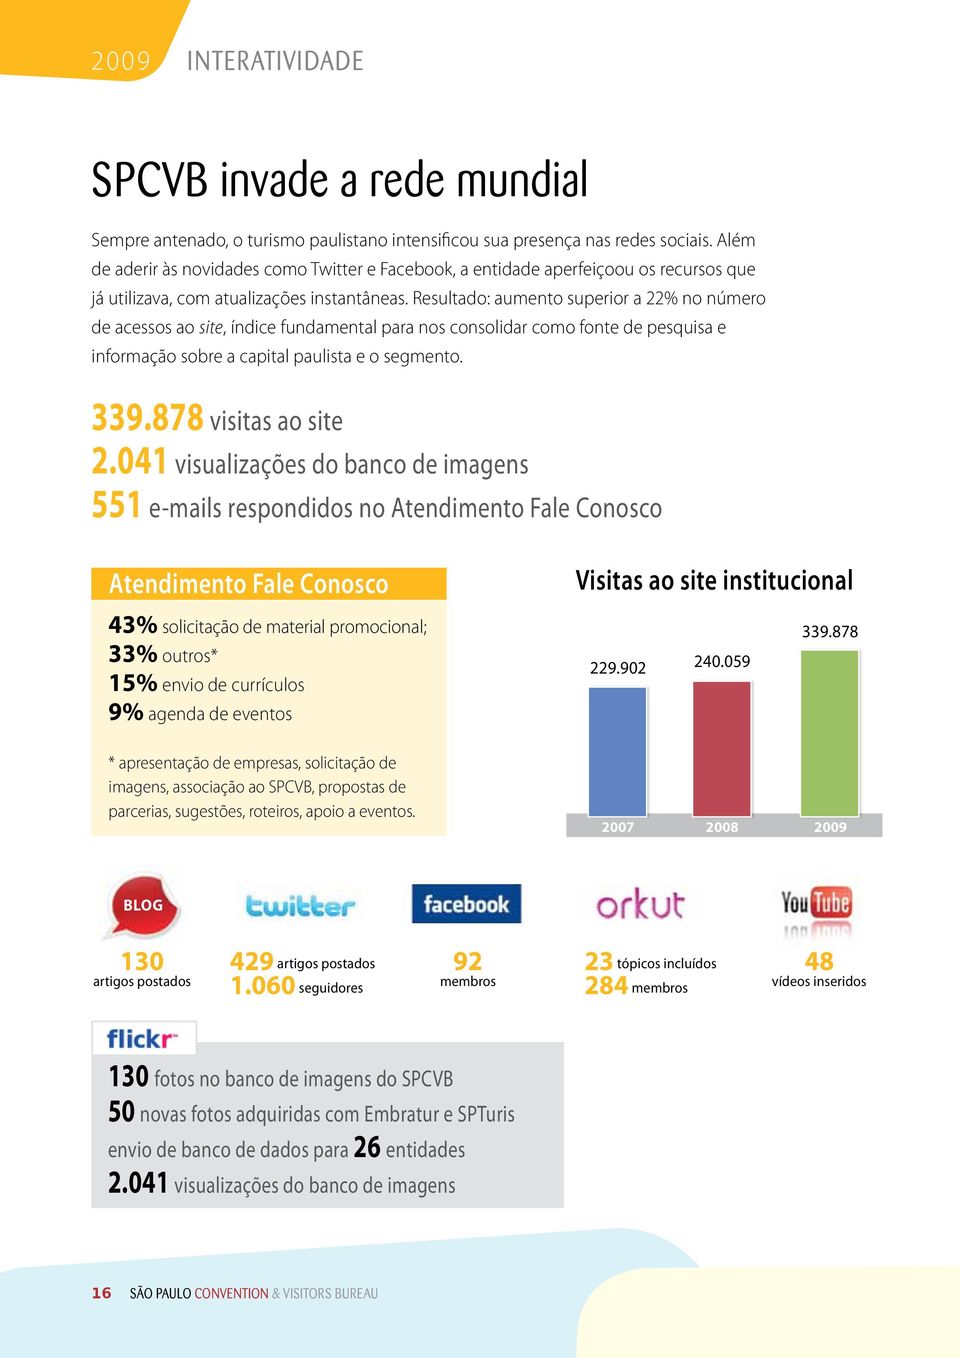 Resultado: aumento superior a 22% no número de acessos ao site, índice fundamental para nos consolidar como fonte de pesquisa e informação sobre a capital paulista e o segmento. 339.